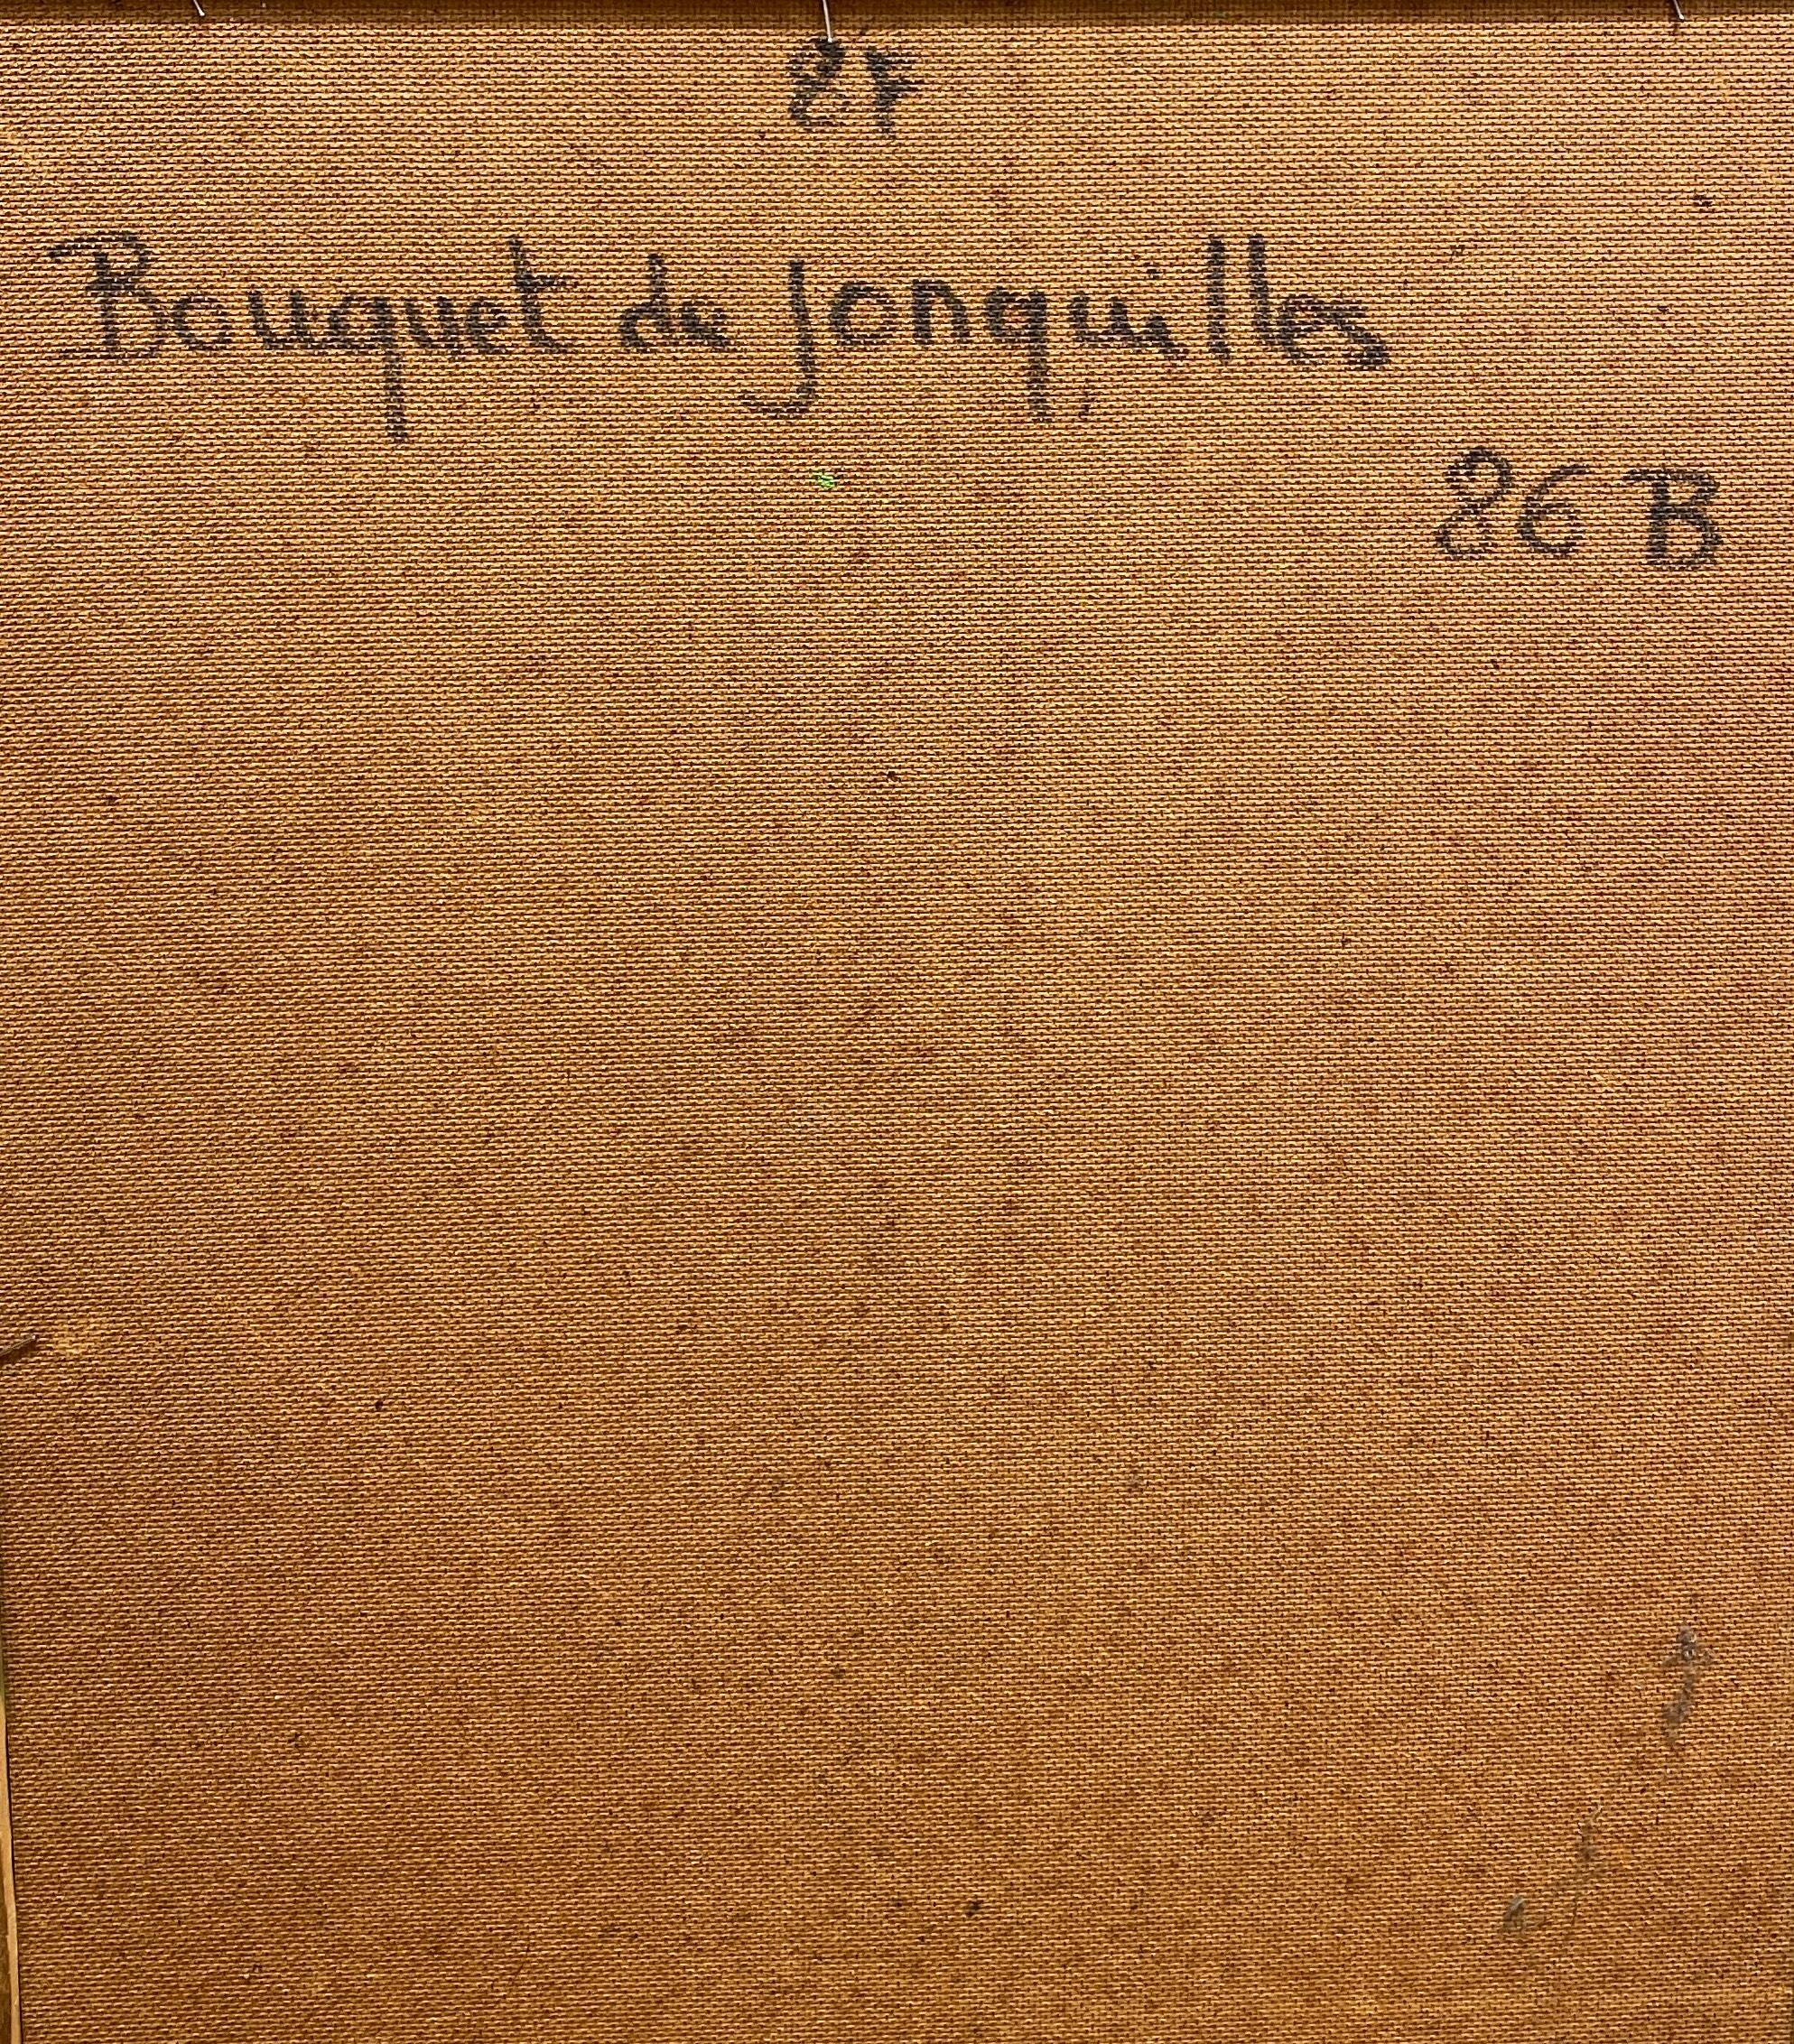 Bouquet de Jonqwlles - Painting by Bernard Buffet